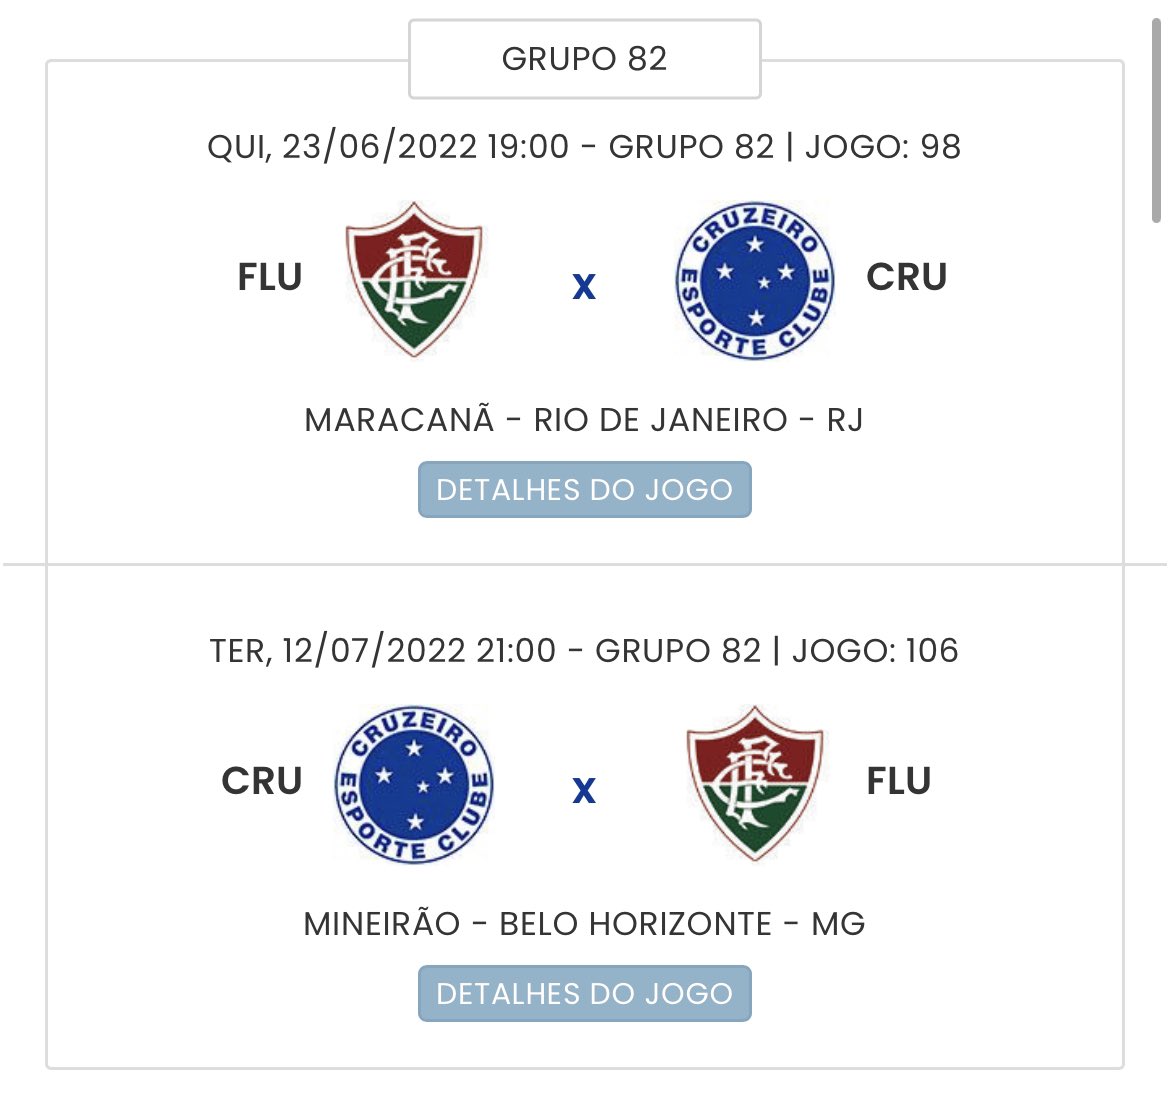 sᴀᴍᴜᴇʟ ᴠᴇɴᴀ̂ɴᴄɪo ™ on X: Jogos do Cruzeiro no mês de julho   / X